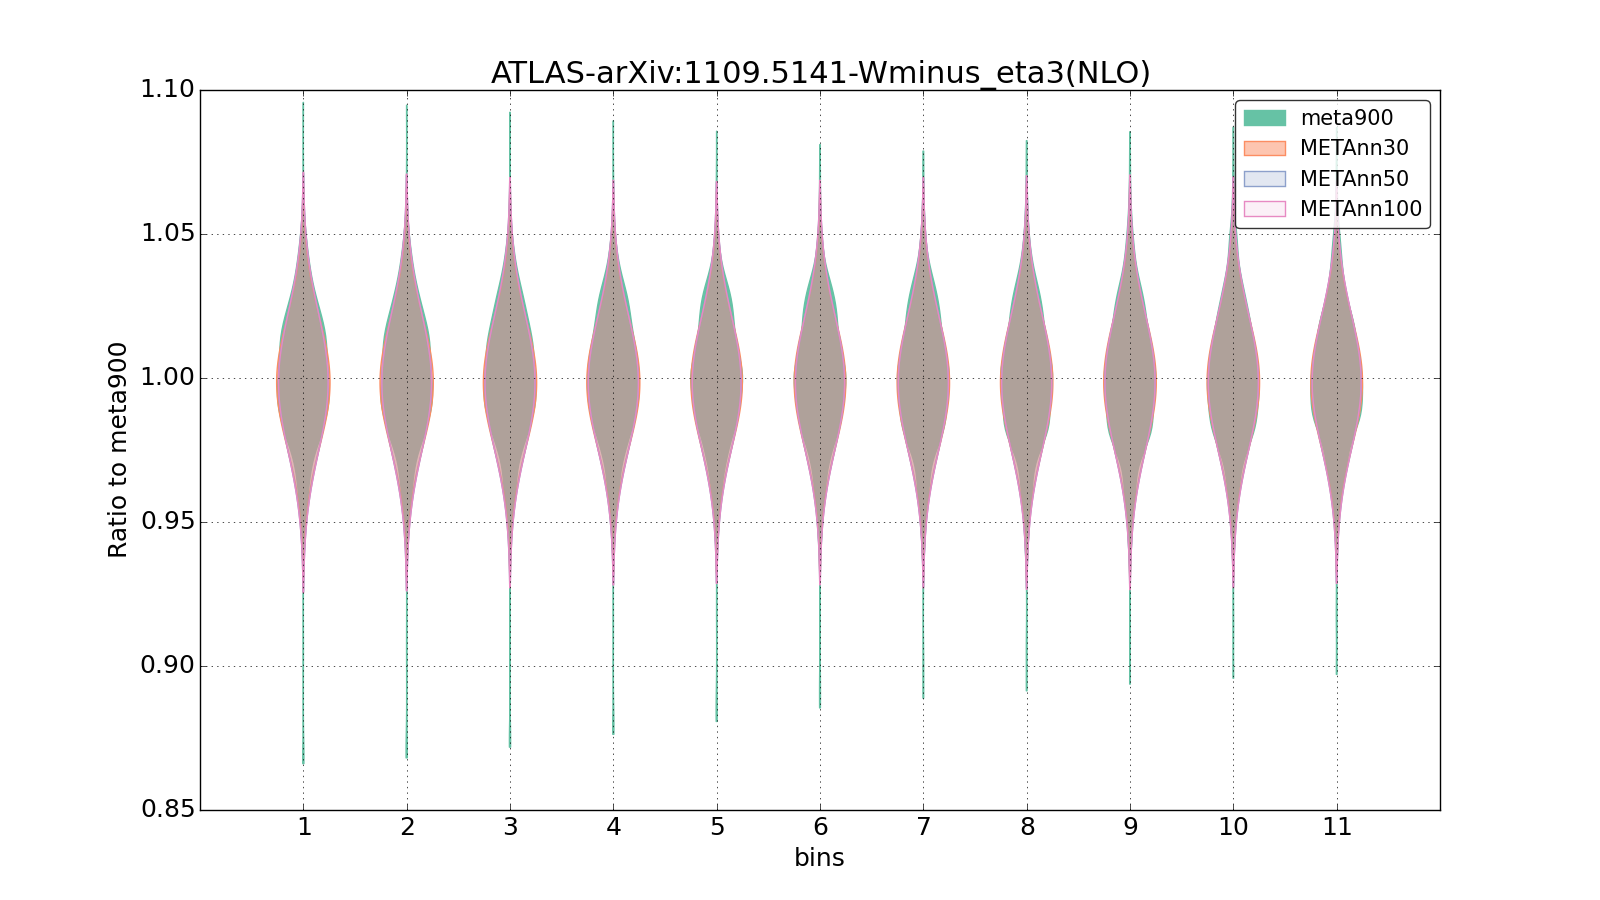 figure plots/meta_ann_pheno/violinplot_ATLAS-arXiv:11095141-Wminus_eta3(NLO).png